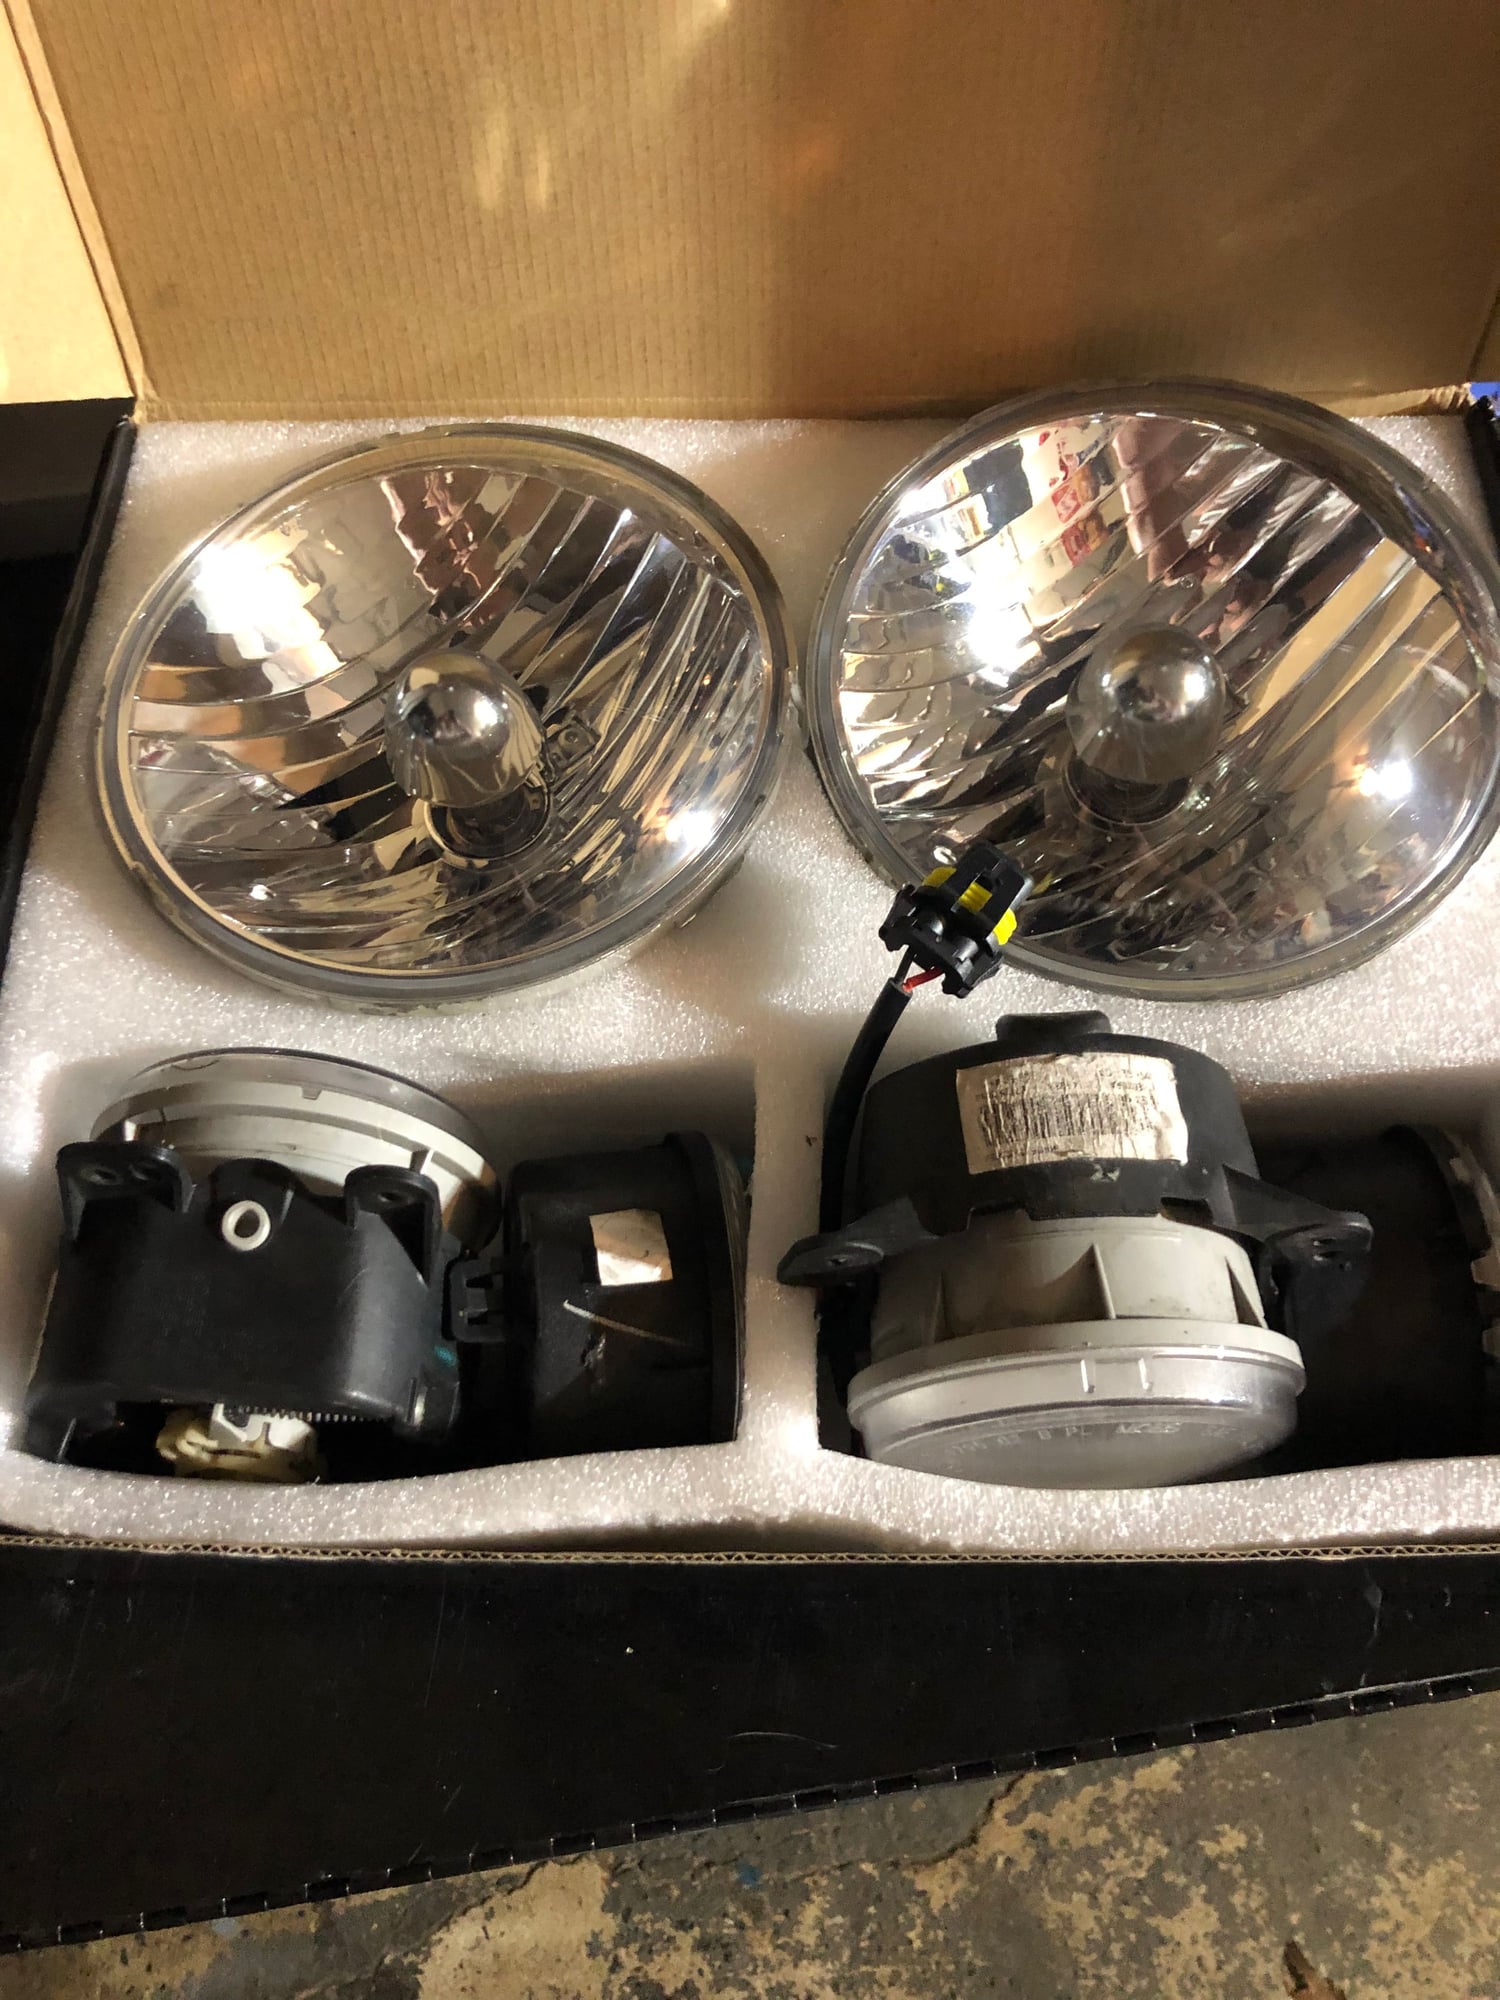 Lights - 2014 JK OEM headlights, fog lights, turn signals - Used - 2007 to 2017 Jeep Wrangler - Edison, NJ 08817, United States